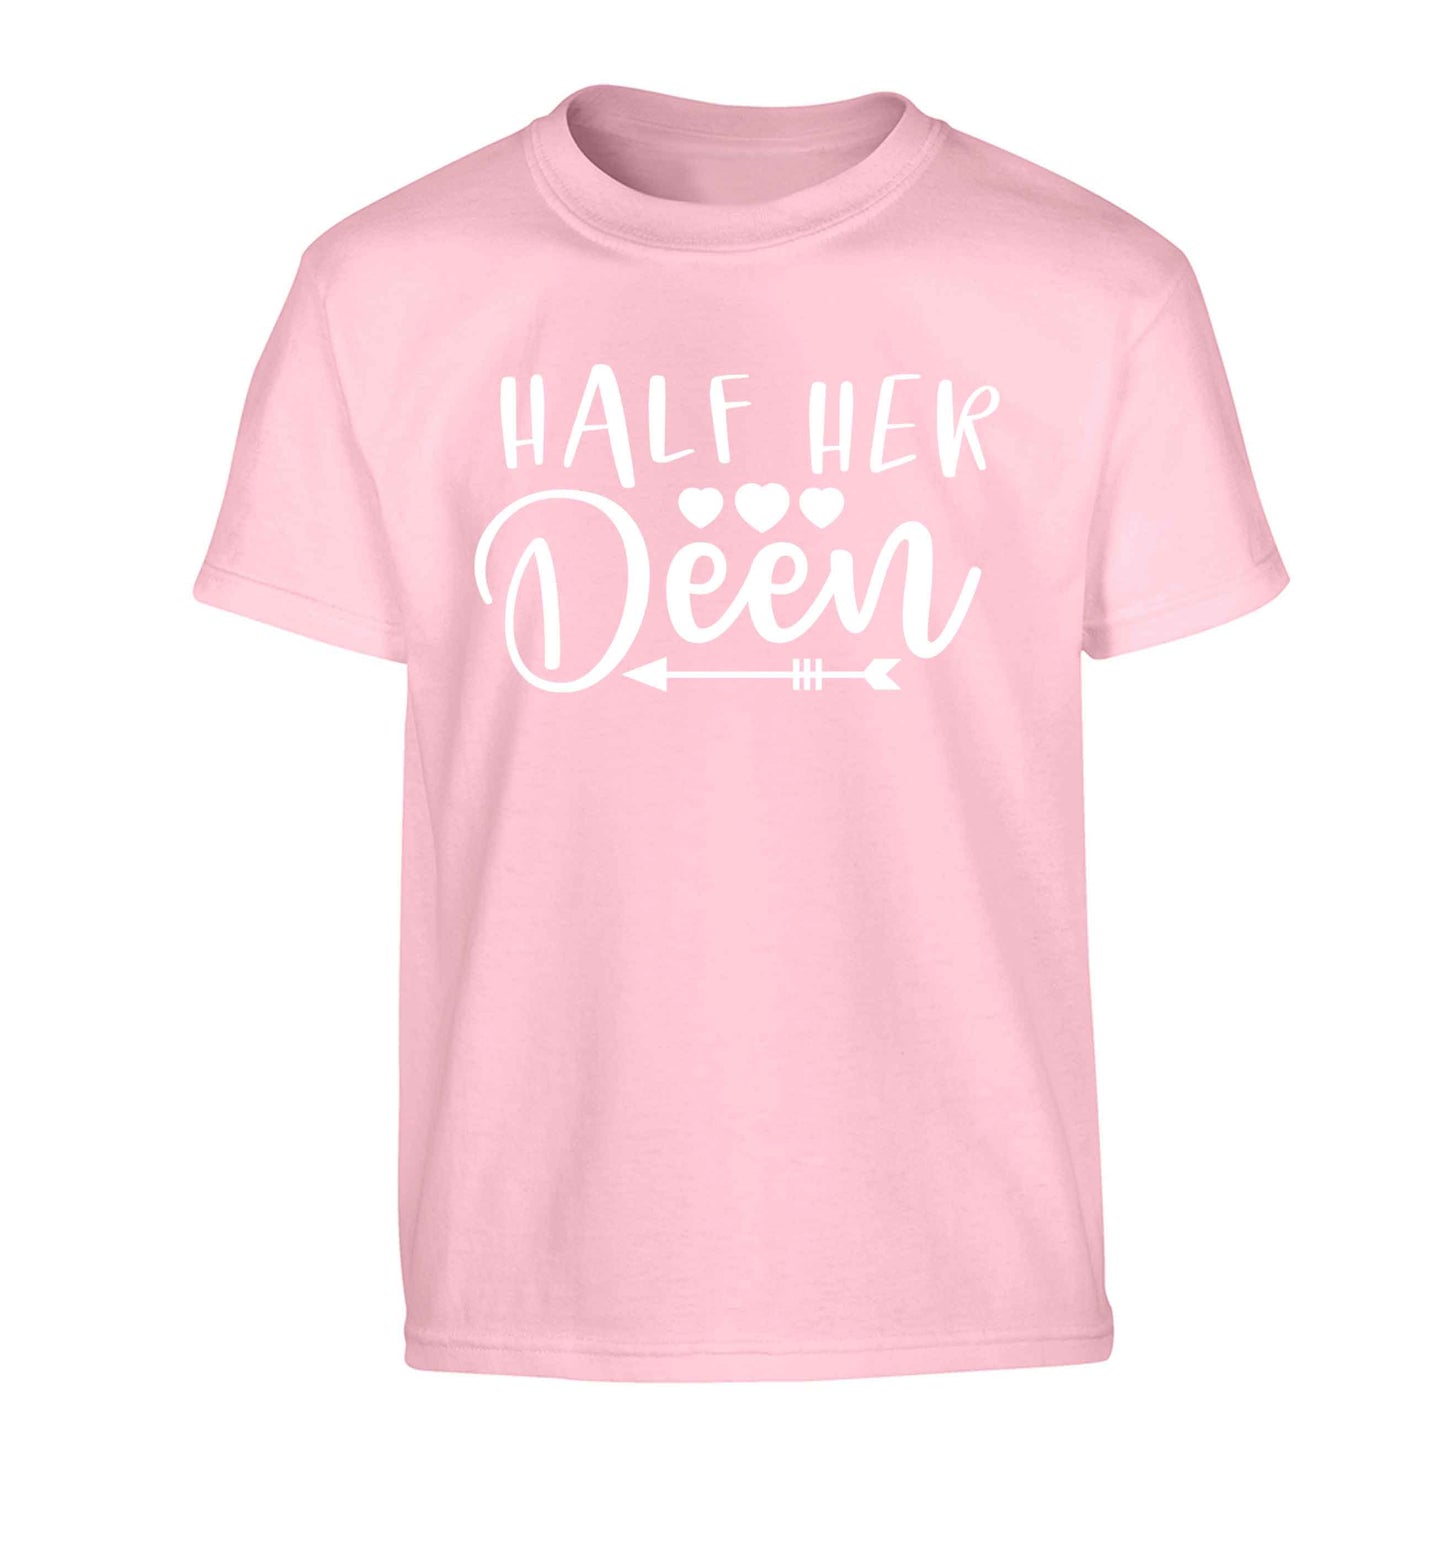 Half her deen Children's light pink Tshirt 12-13 Years